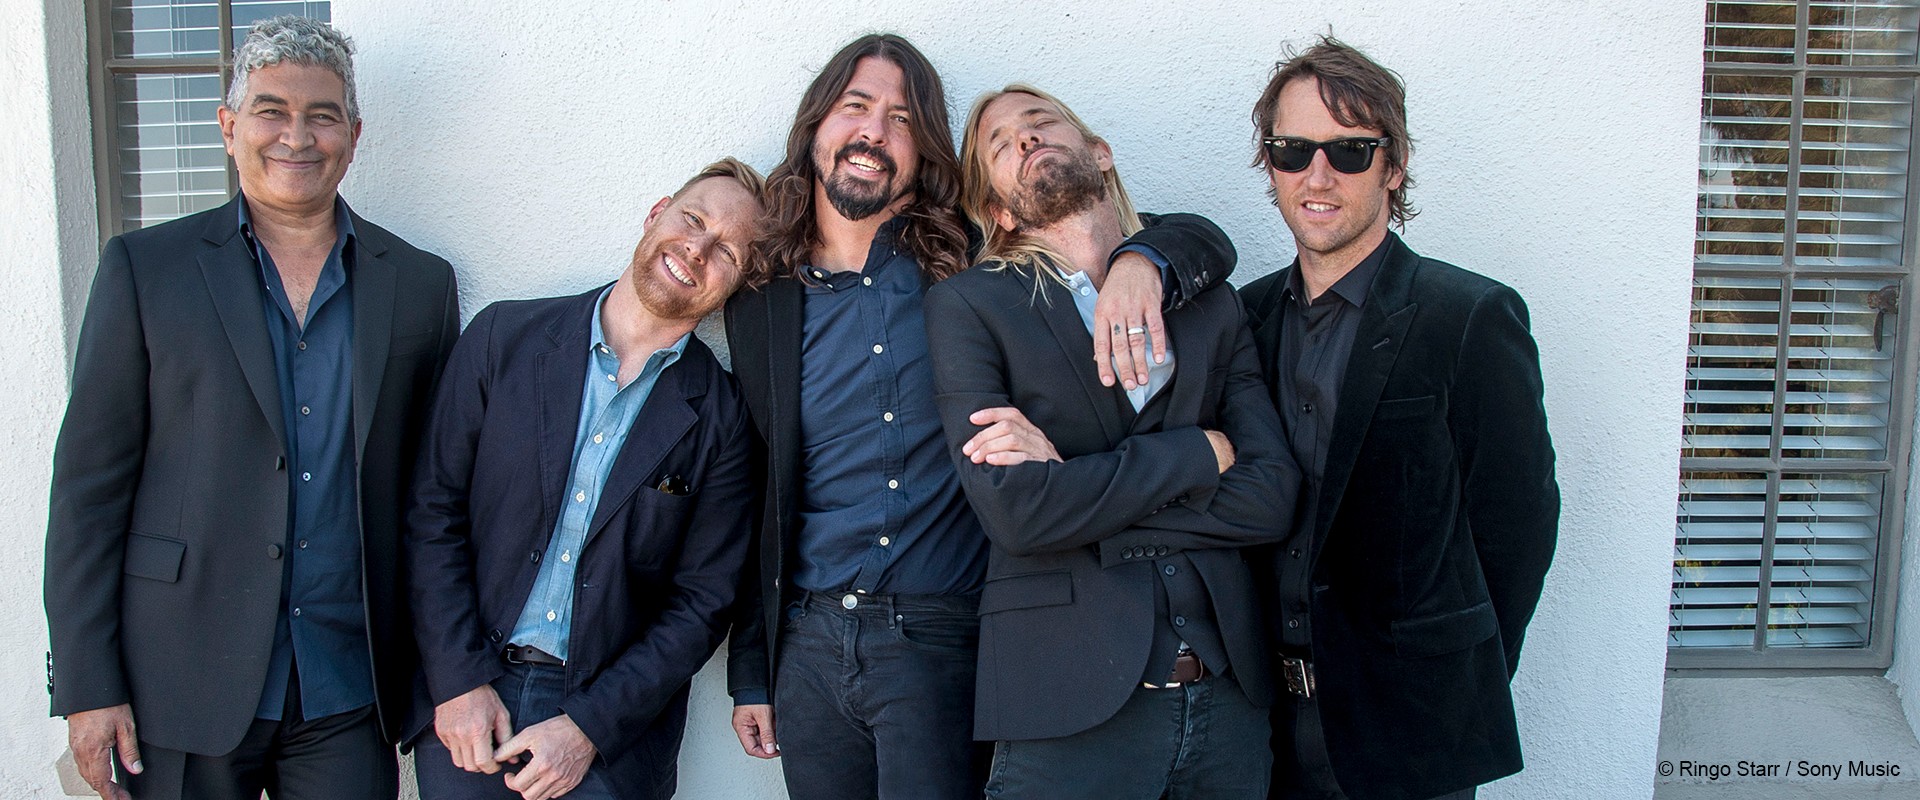 Neues Album von Foo Fighters soll 2020 erscheinen